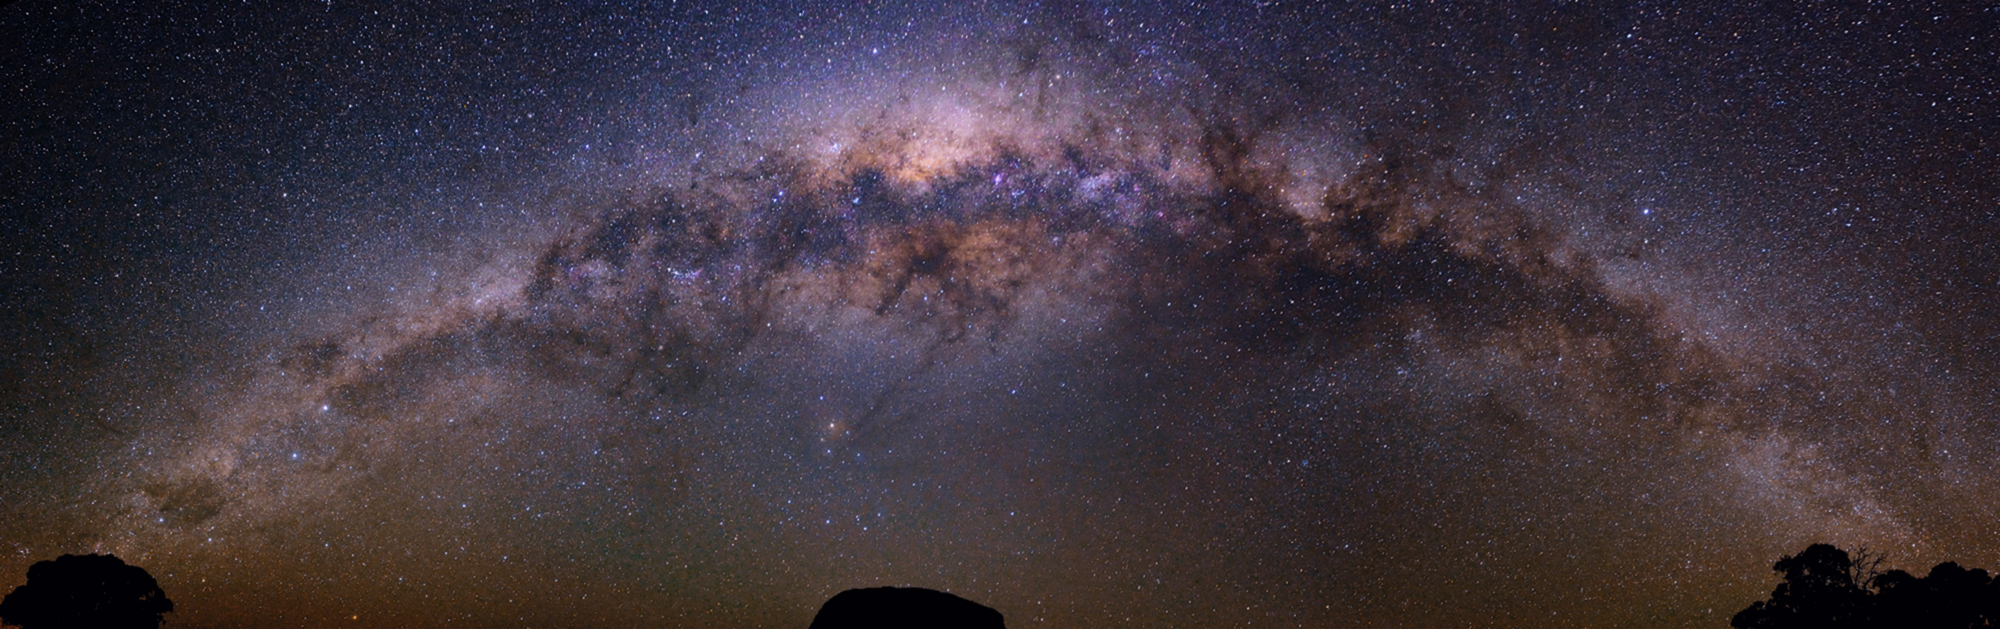 Milky Way 3 panel panorama 